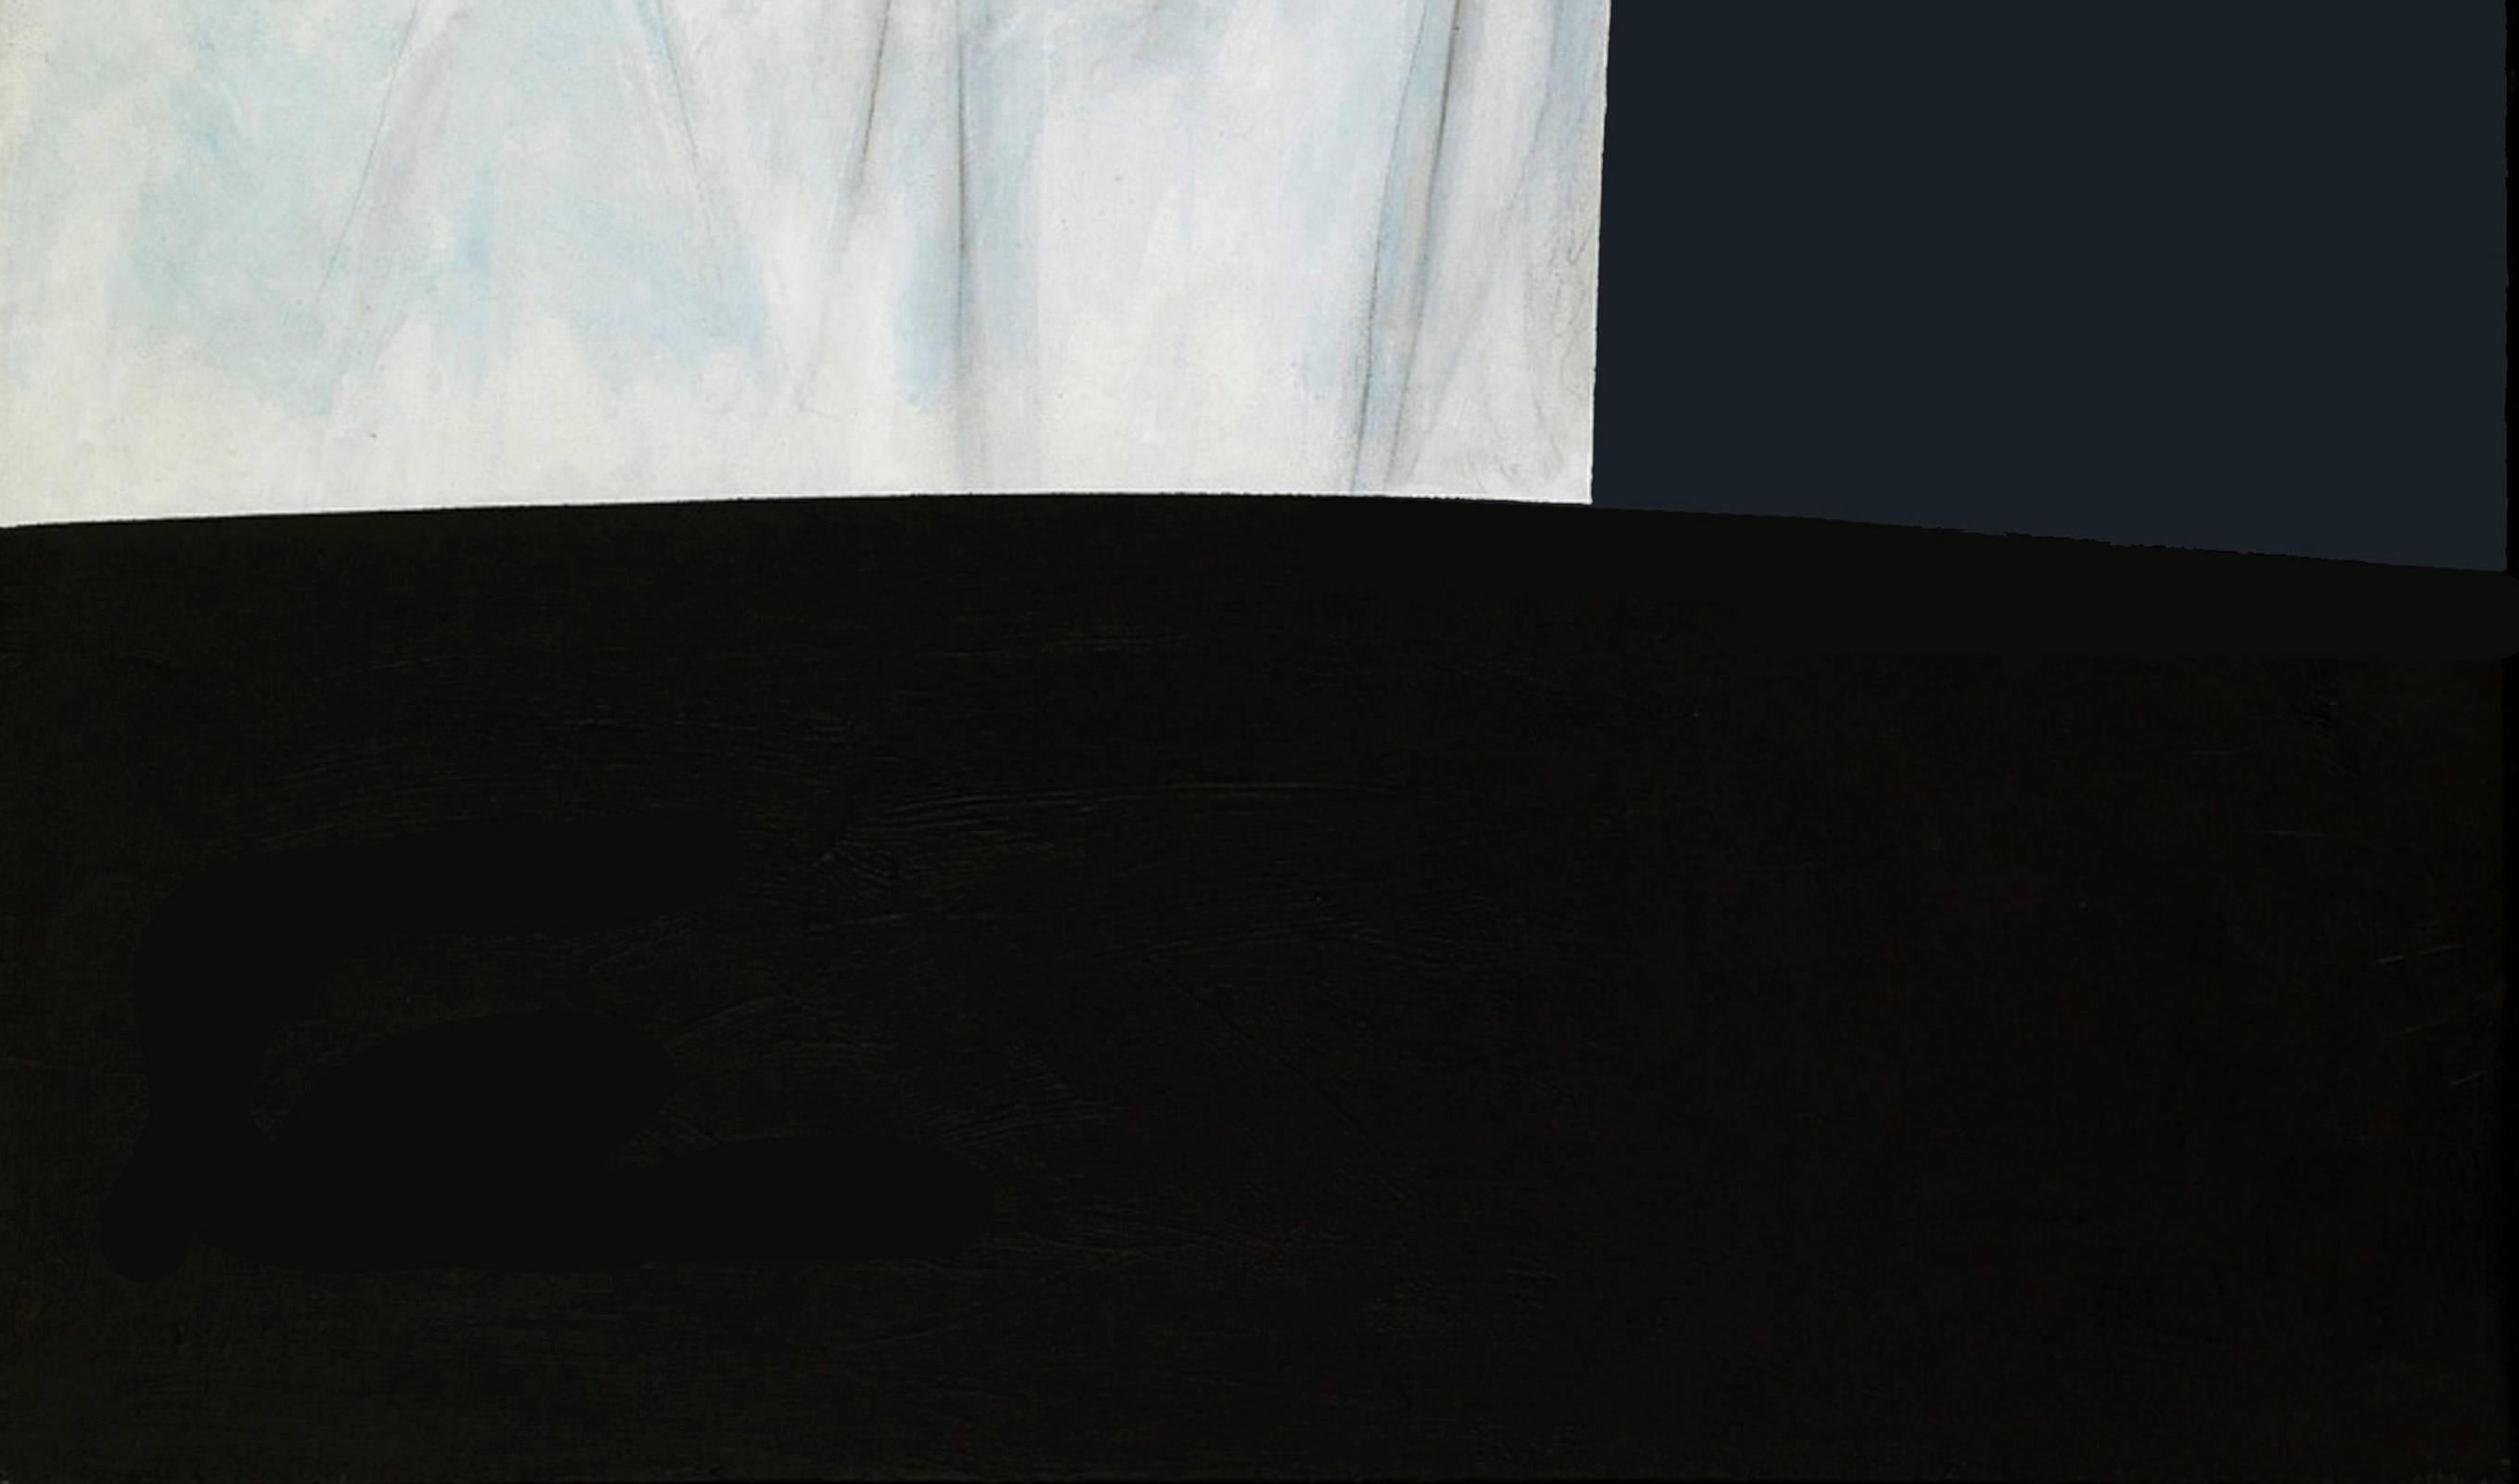 Night : The Canvas House - pop-art, minimaliste, contemporain, acrylique sur toile - Contemporain Painting par Charles Pachter